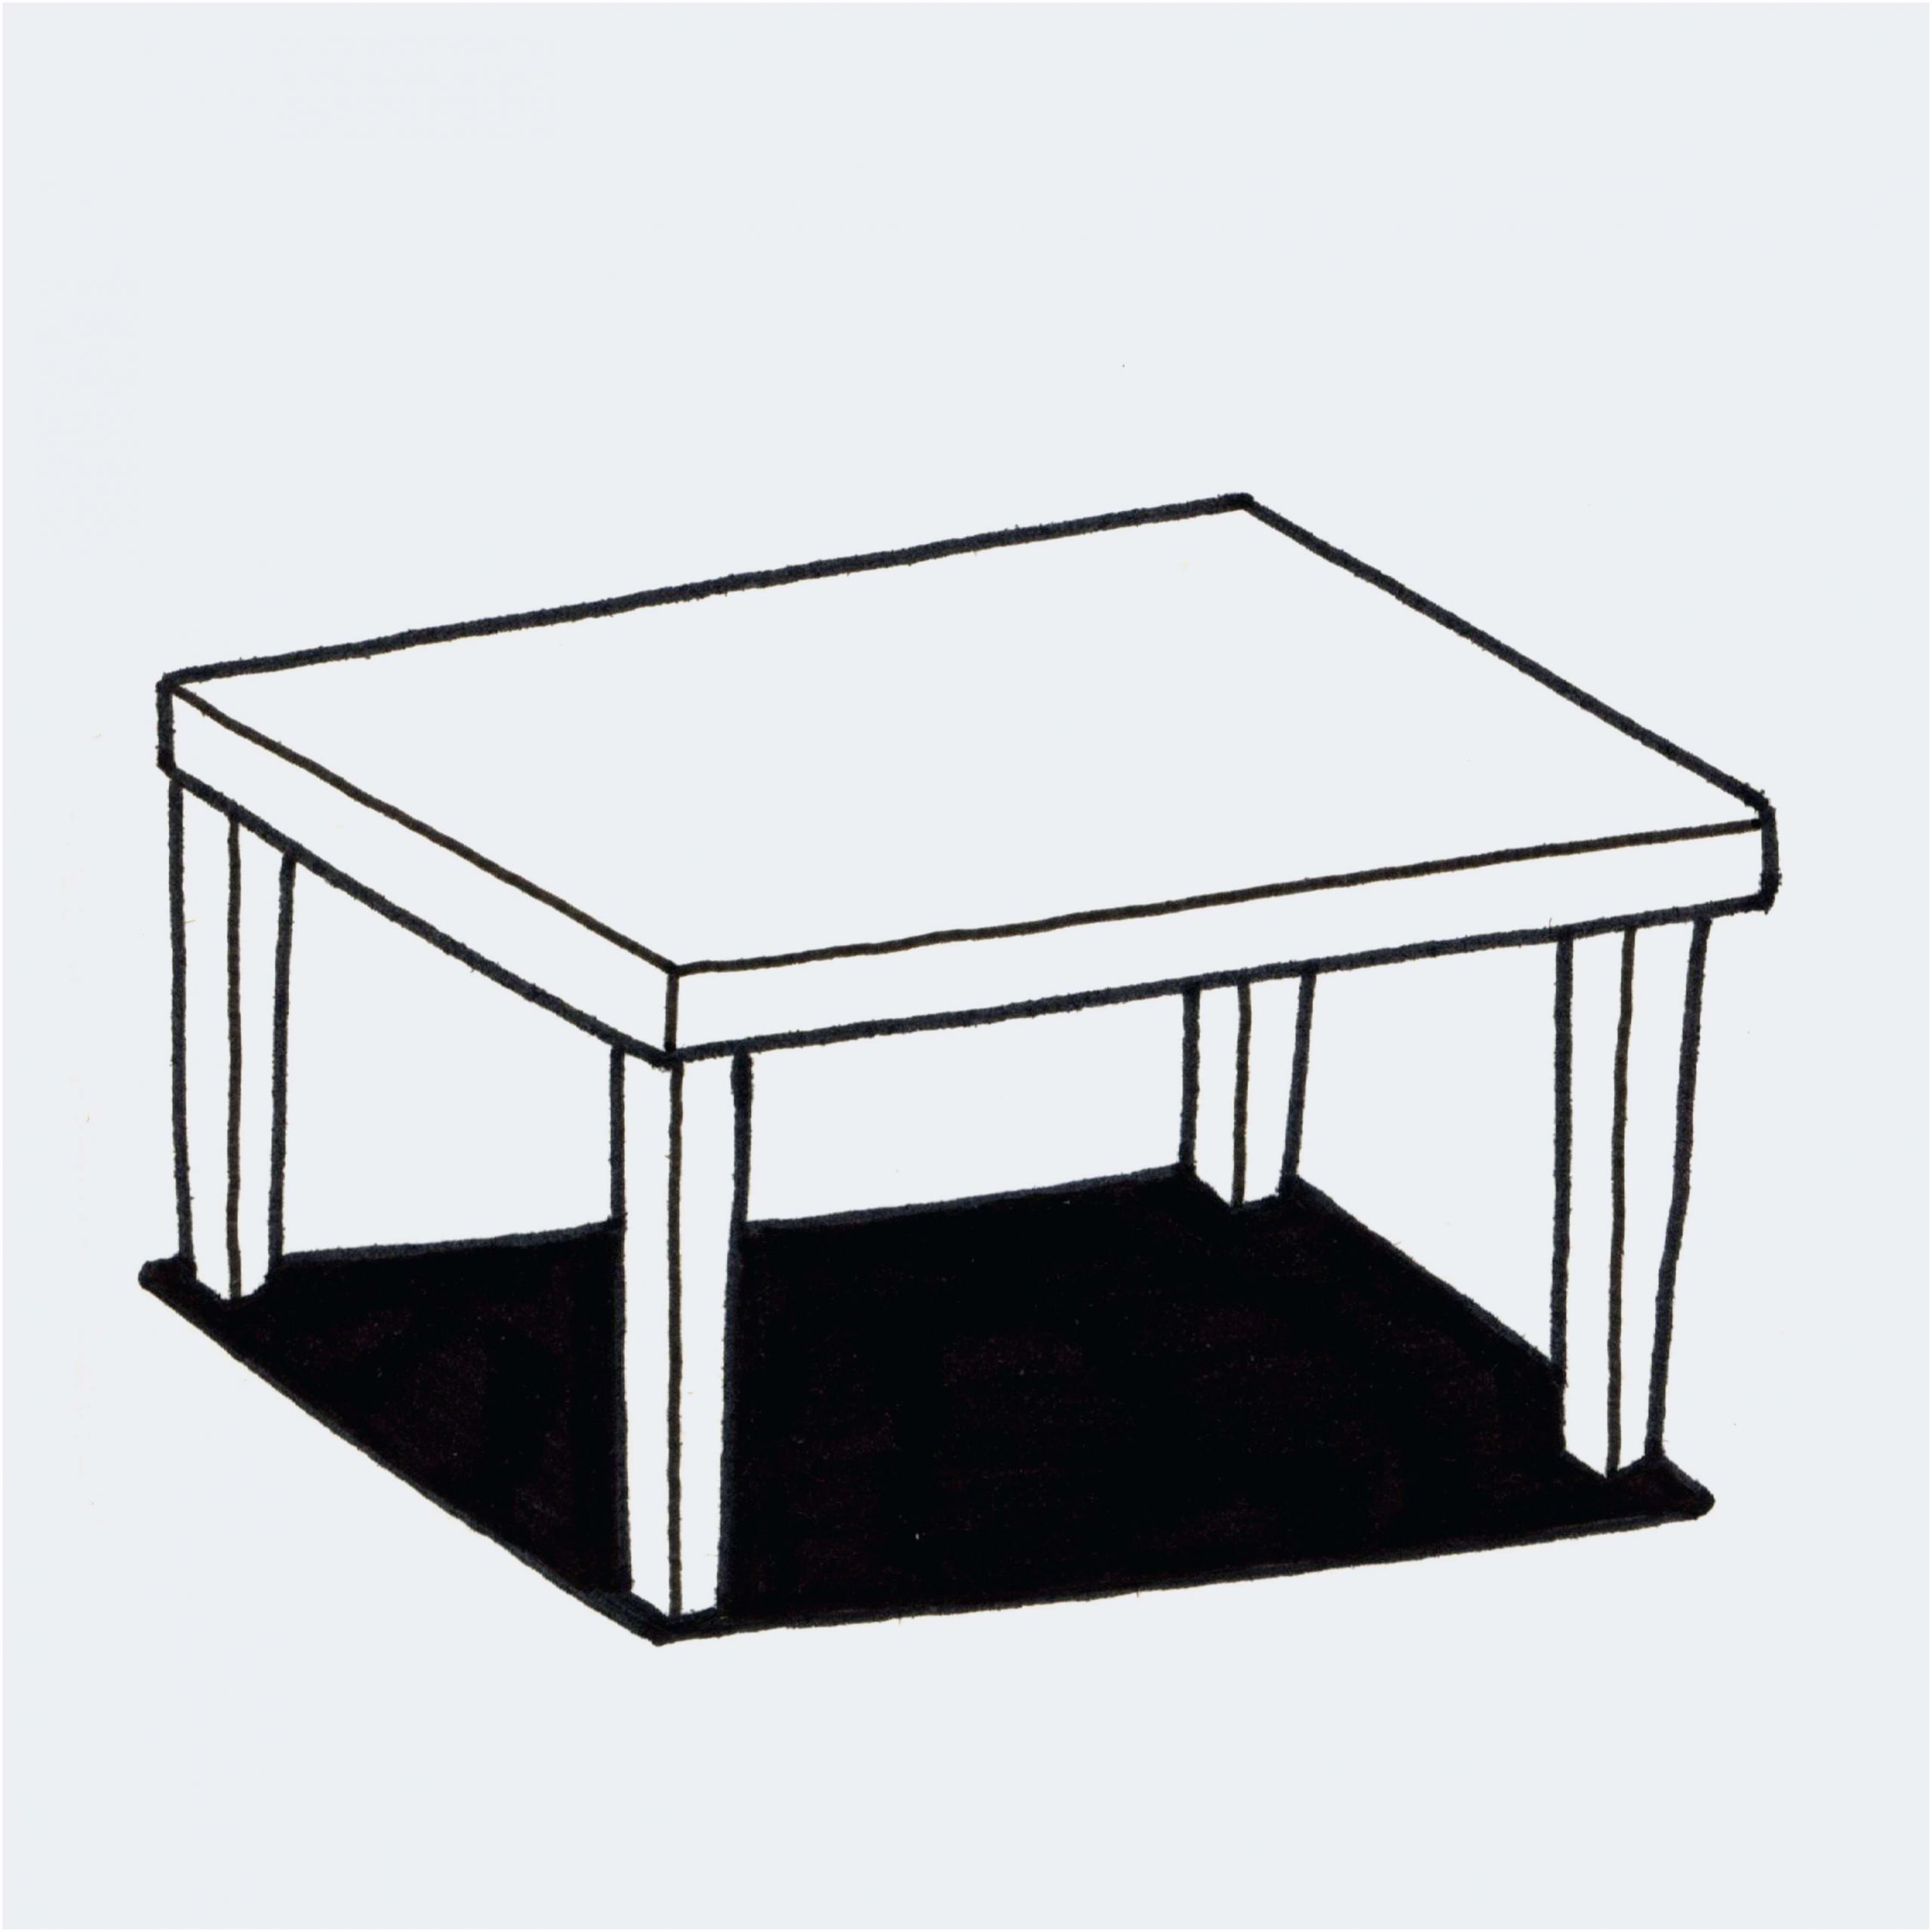 table pliante marche beau table de jardin aluminium avec rallonge 14 inspire luxe 40 de table basse noir laque opinion pour meilleur table pliante marche